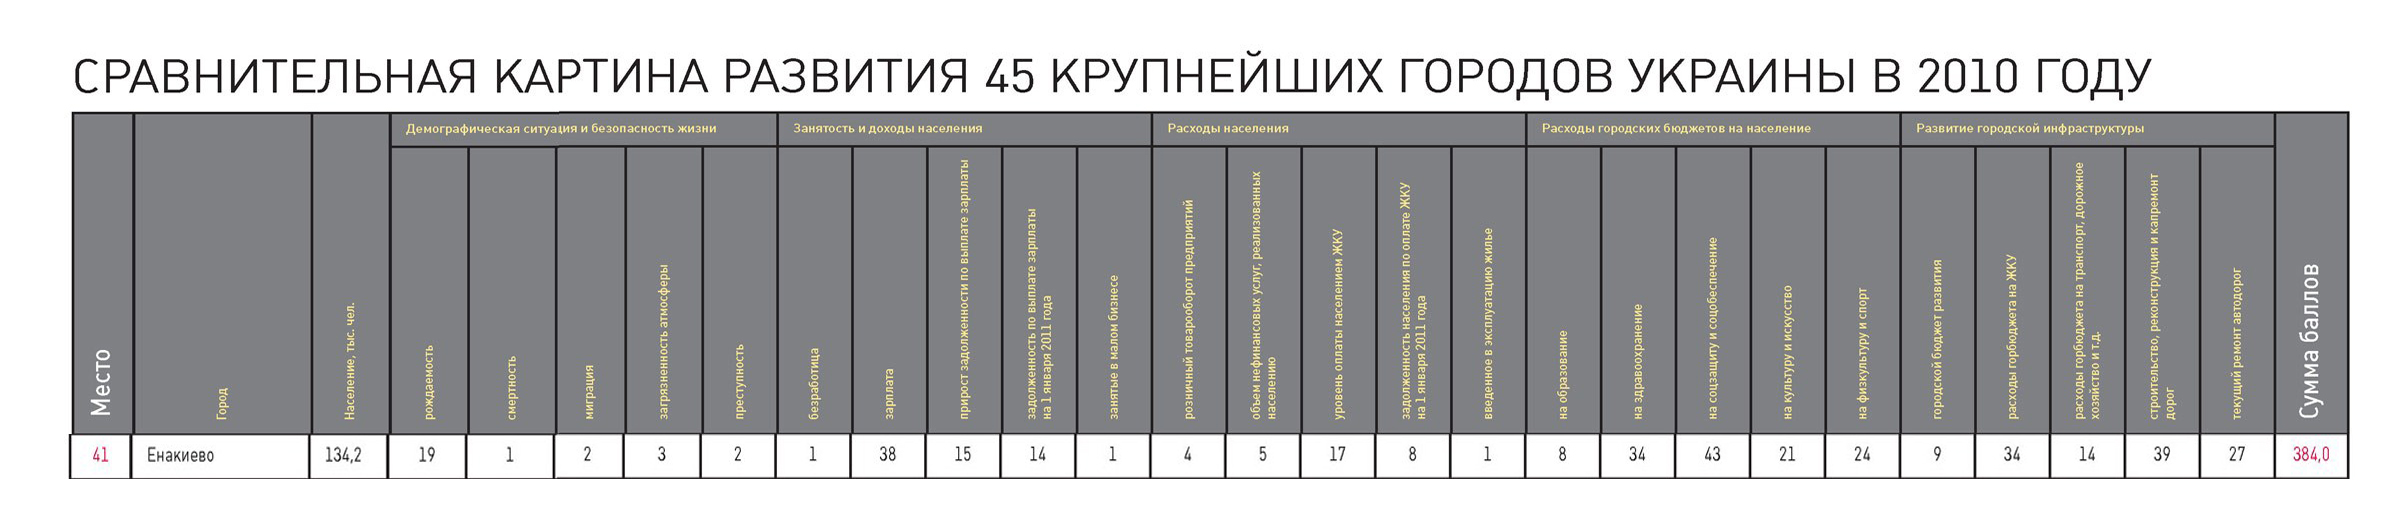 В рейтинге городов Украины за 2010 год Енакиево заняло 41 место